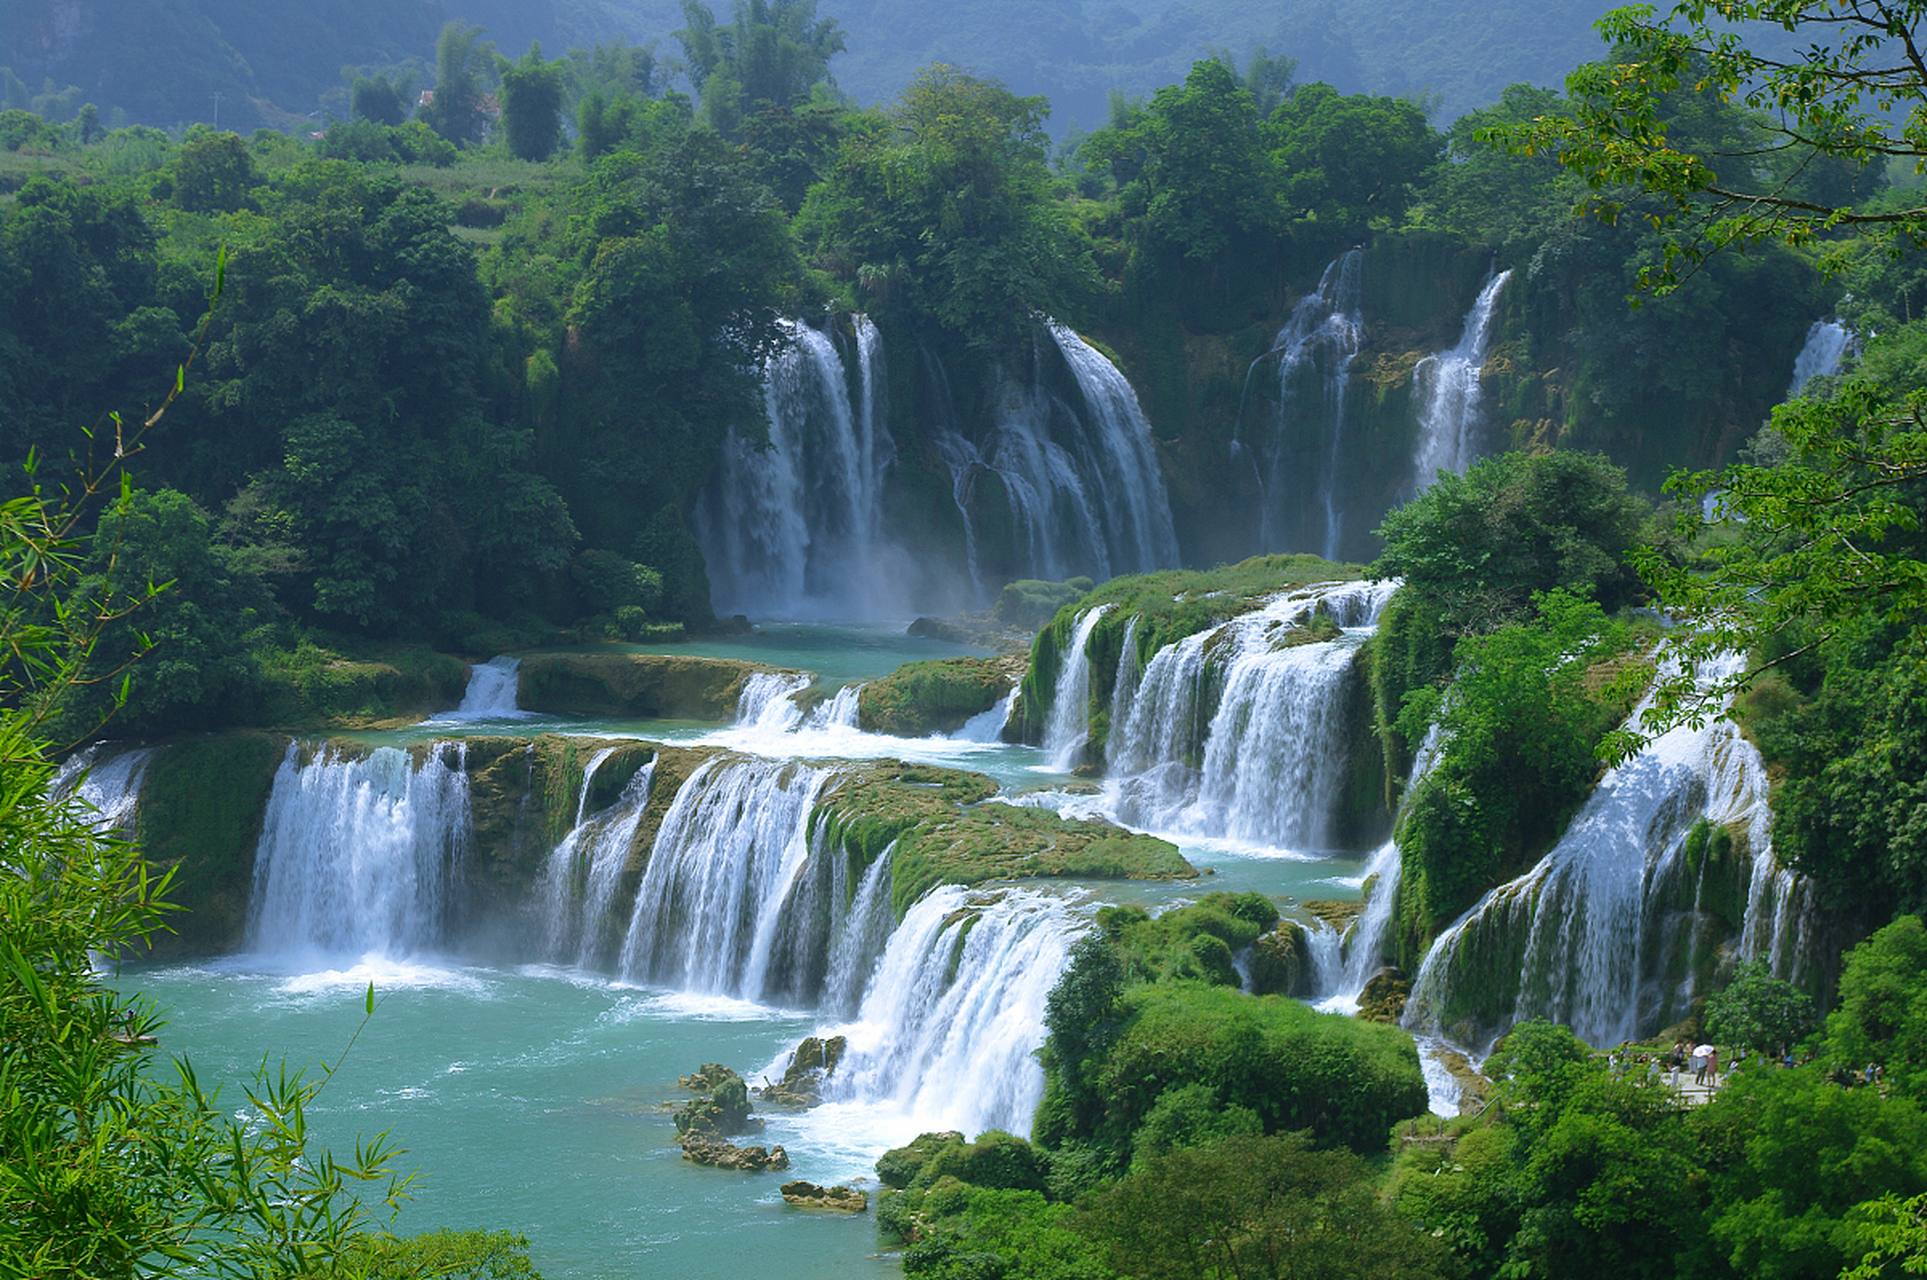 亚洲第一,世界第四大跨国瀑布——德天瀑布  德天瀑布位于中国广西